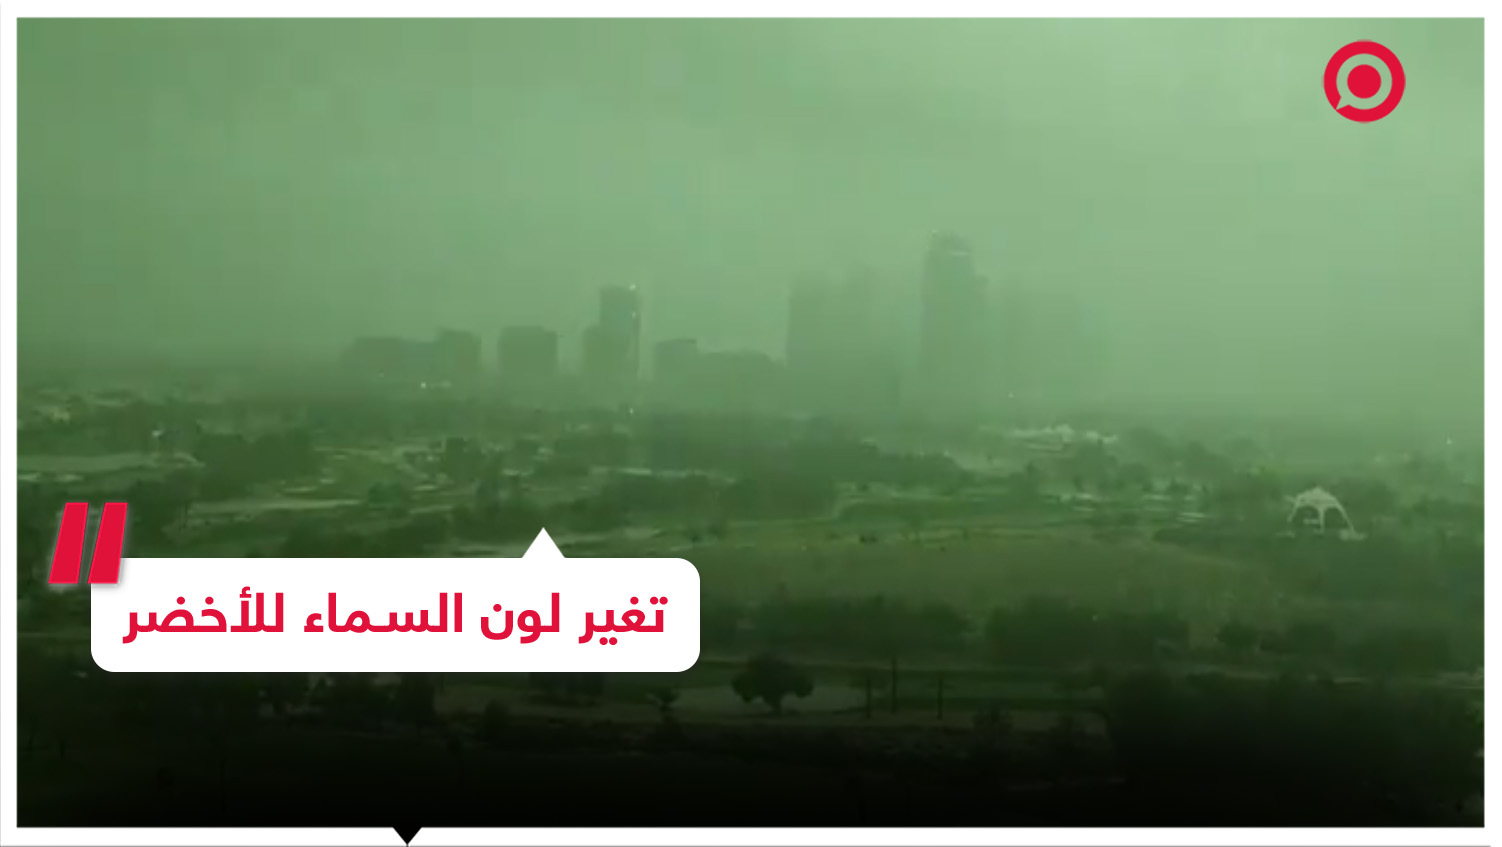 لقطات بتقنية "تايم لابس" ترصد أجواء دبي ما قبل العاصفة التي ضربت المدينة